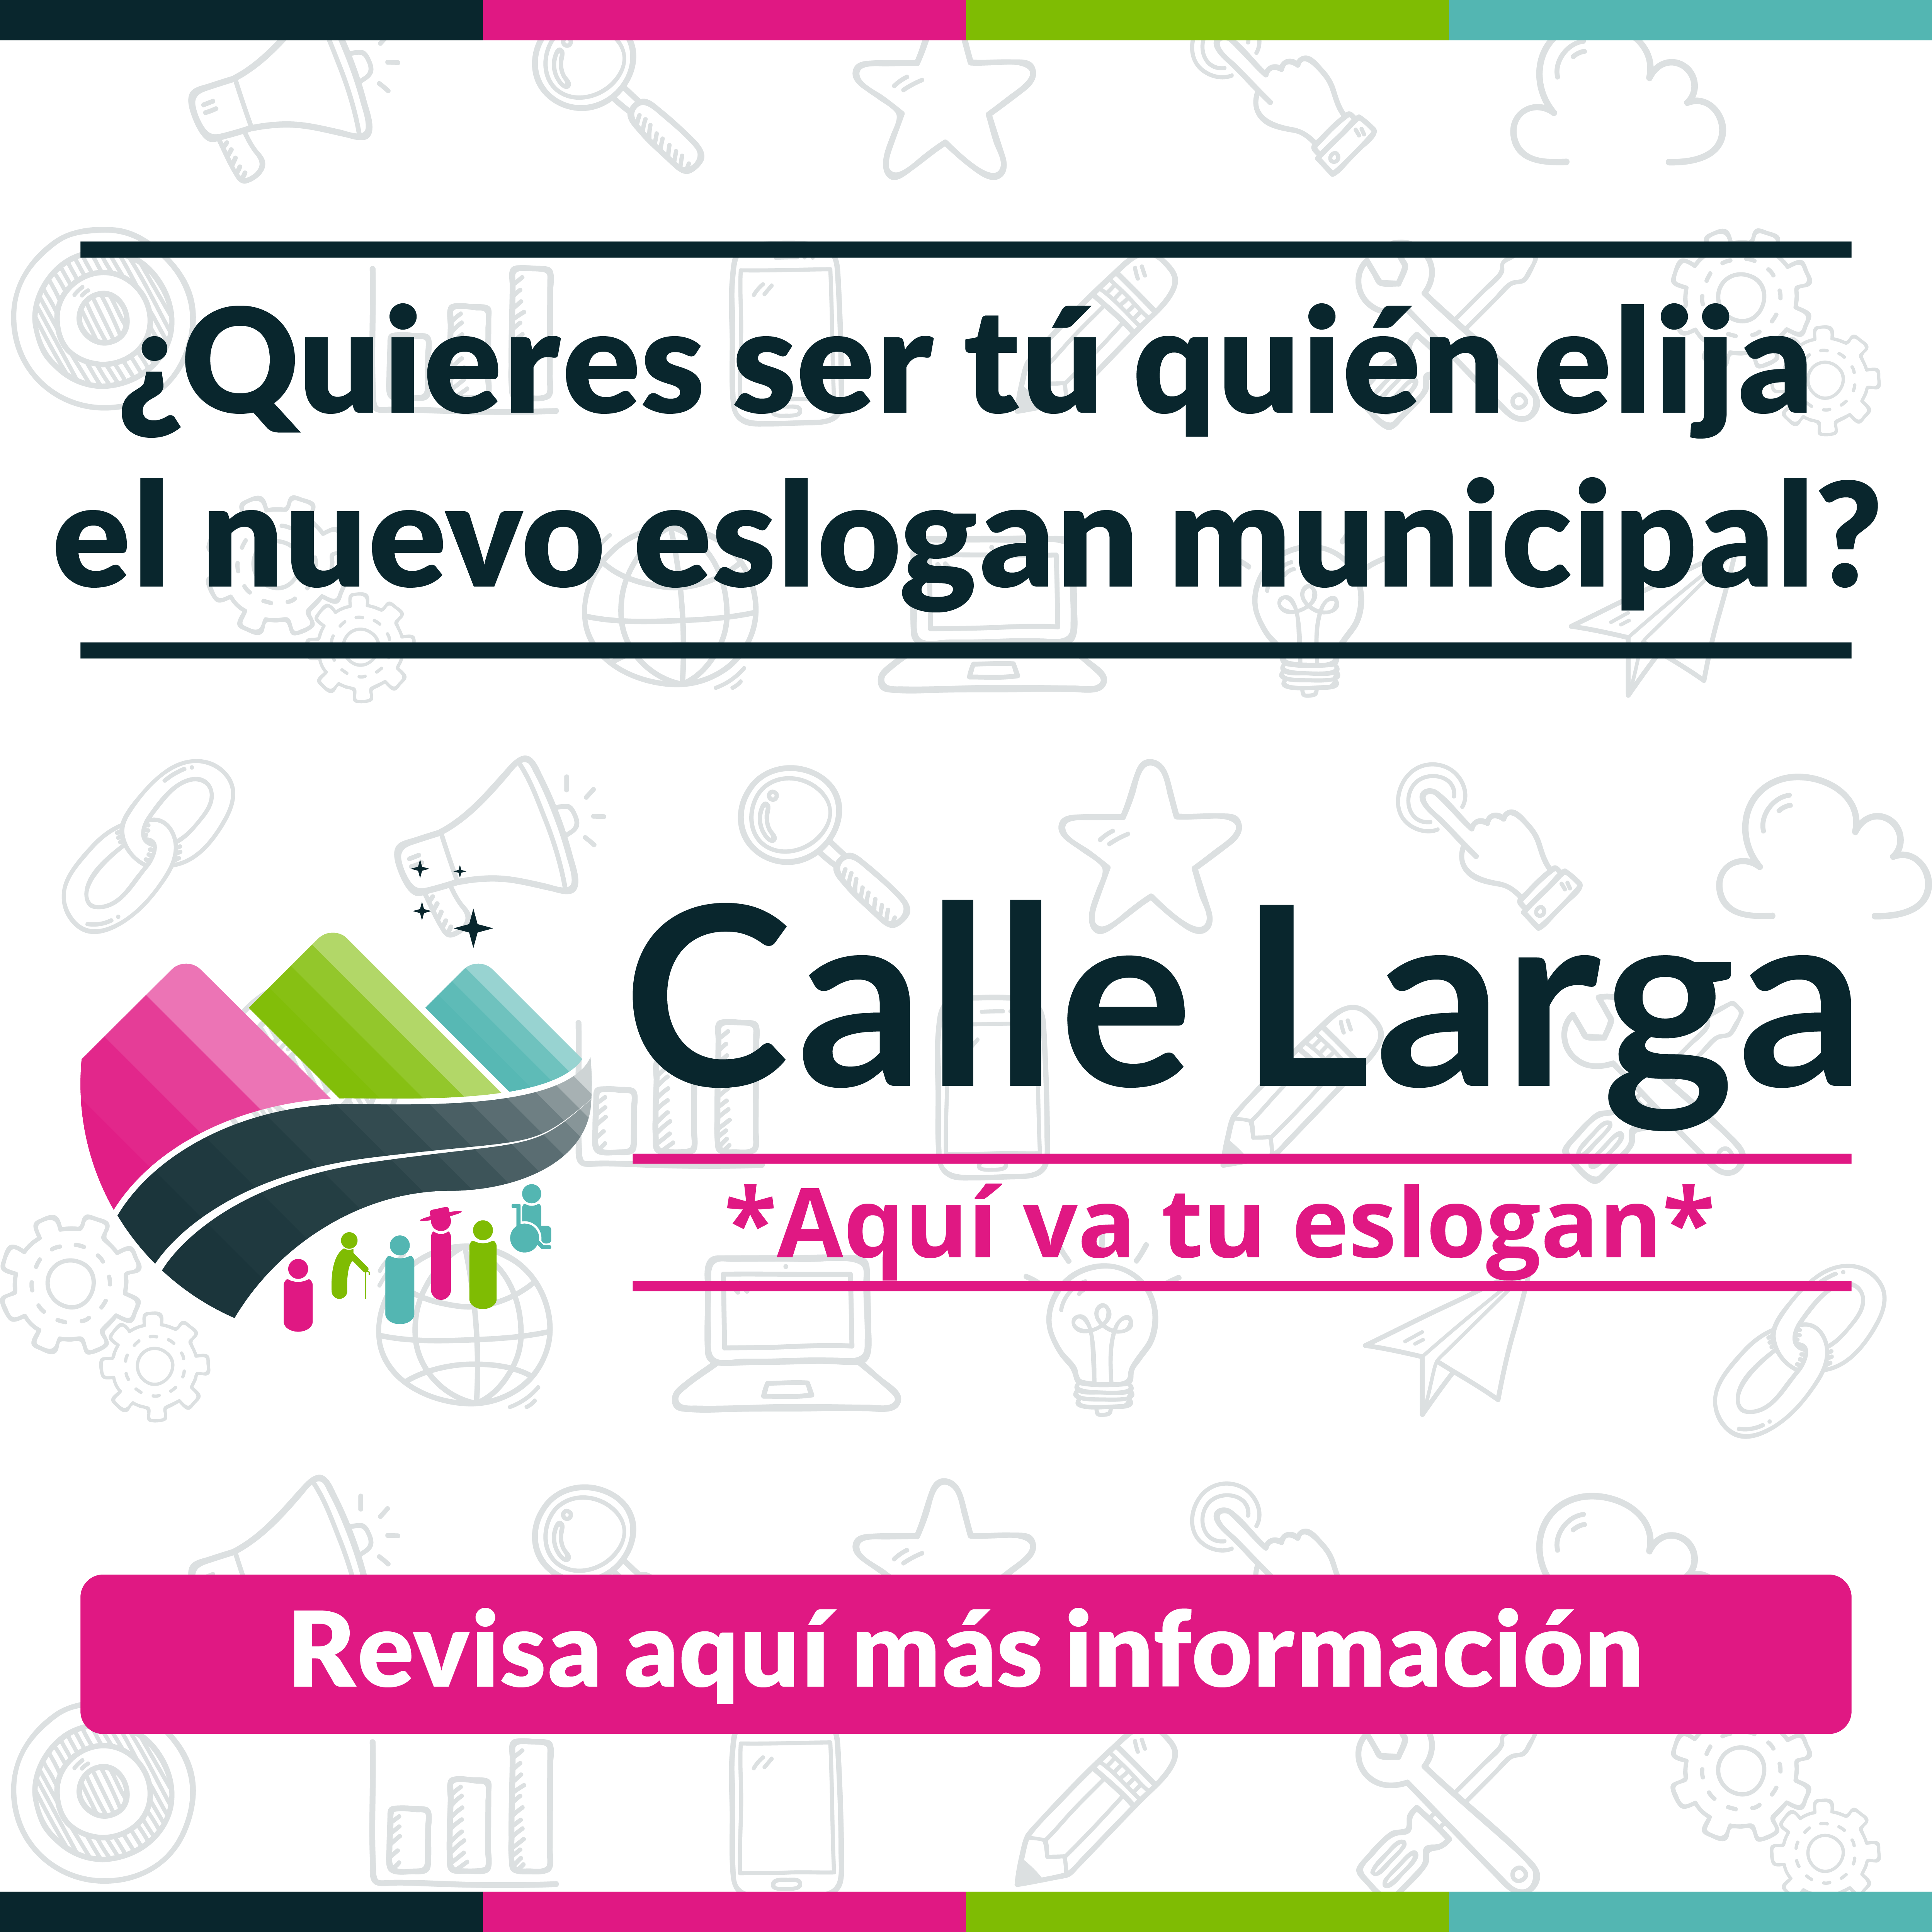 CALLE LARGA: Municipalidad de Calle Larga invita a la comunidad a elegir el nuevo eslogan municipal